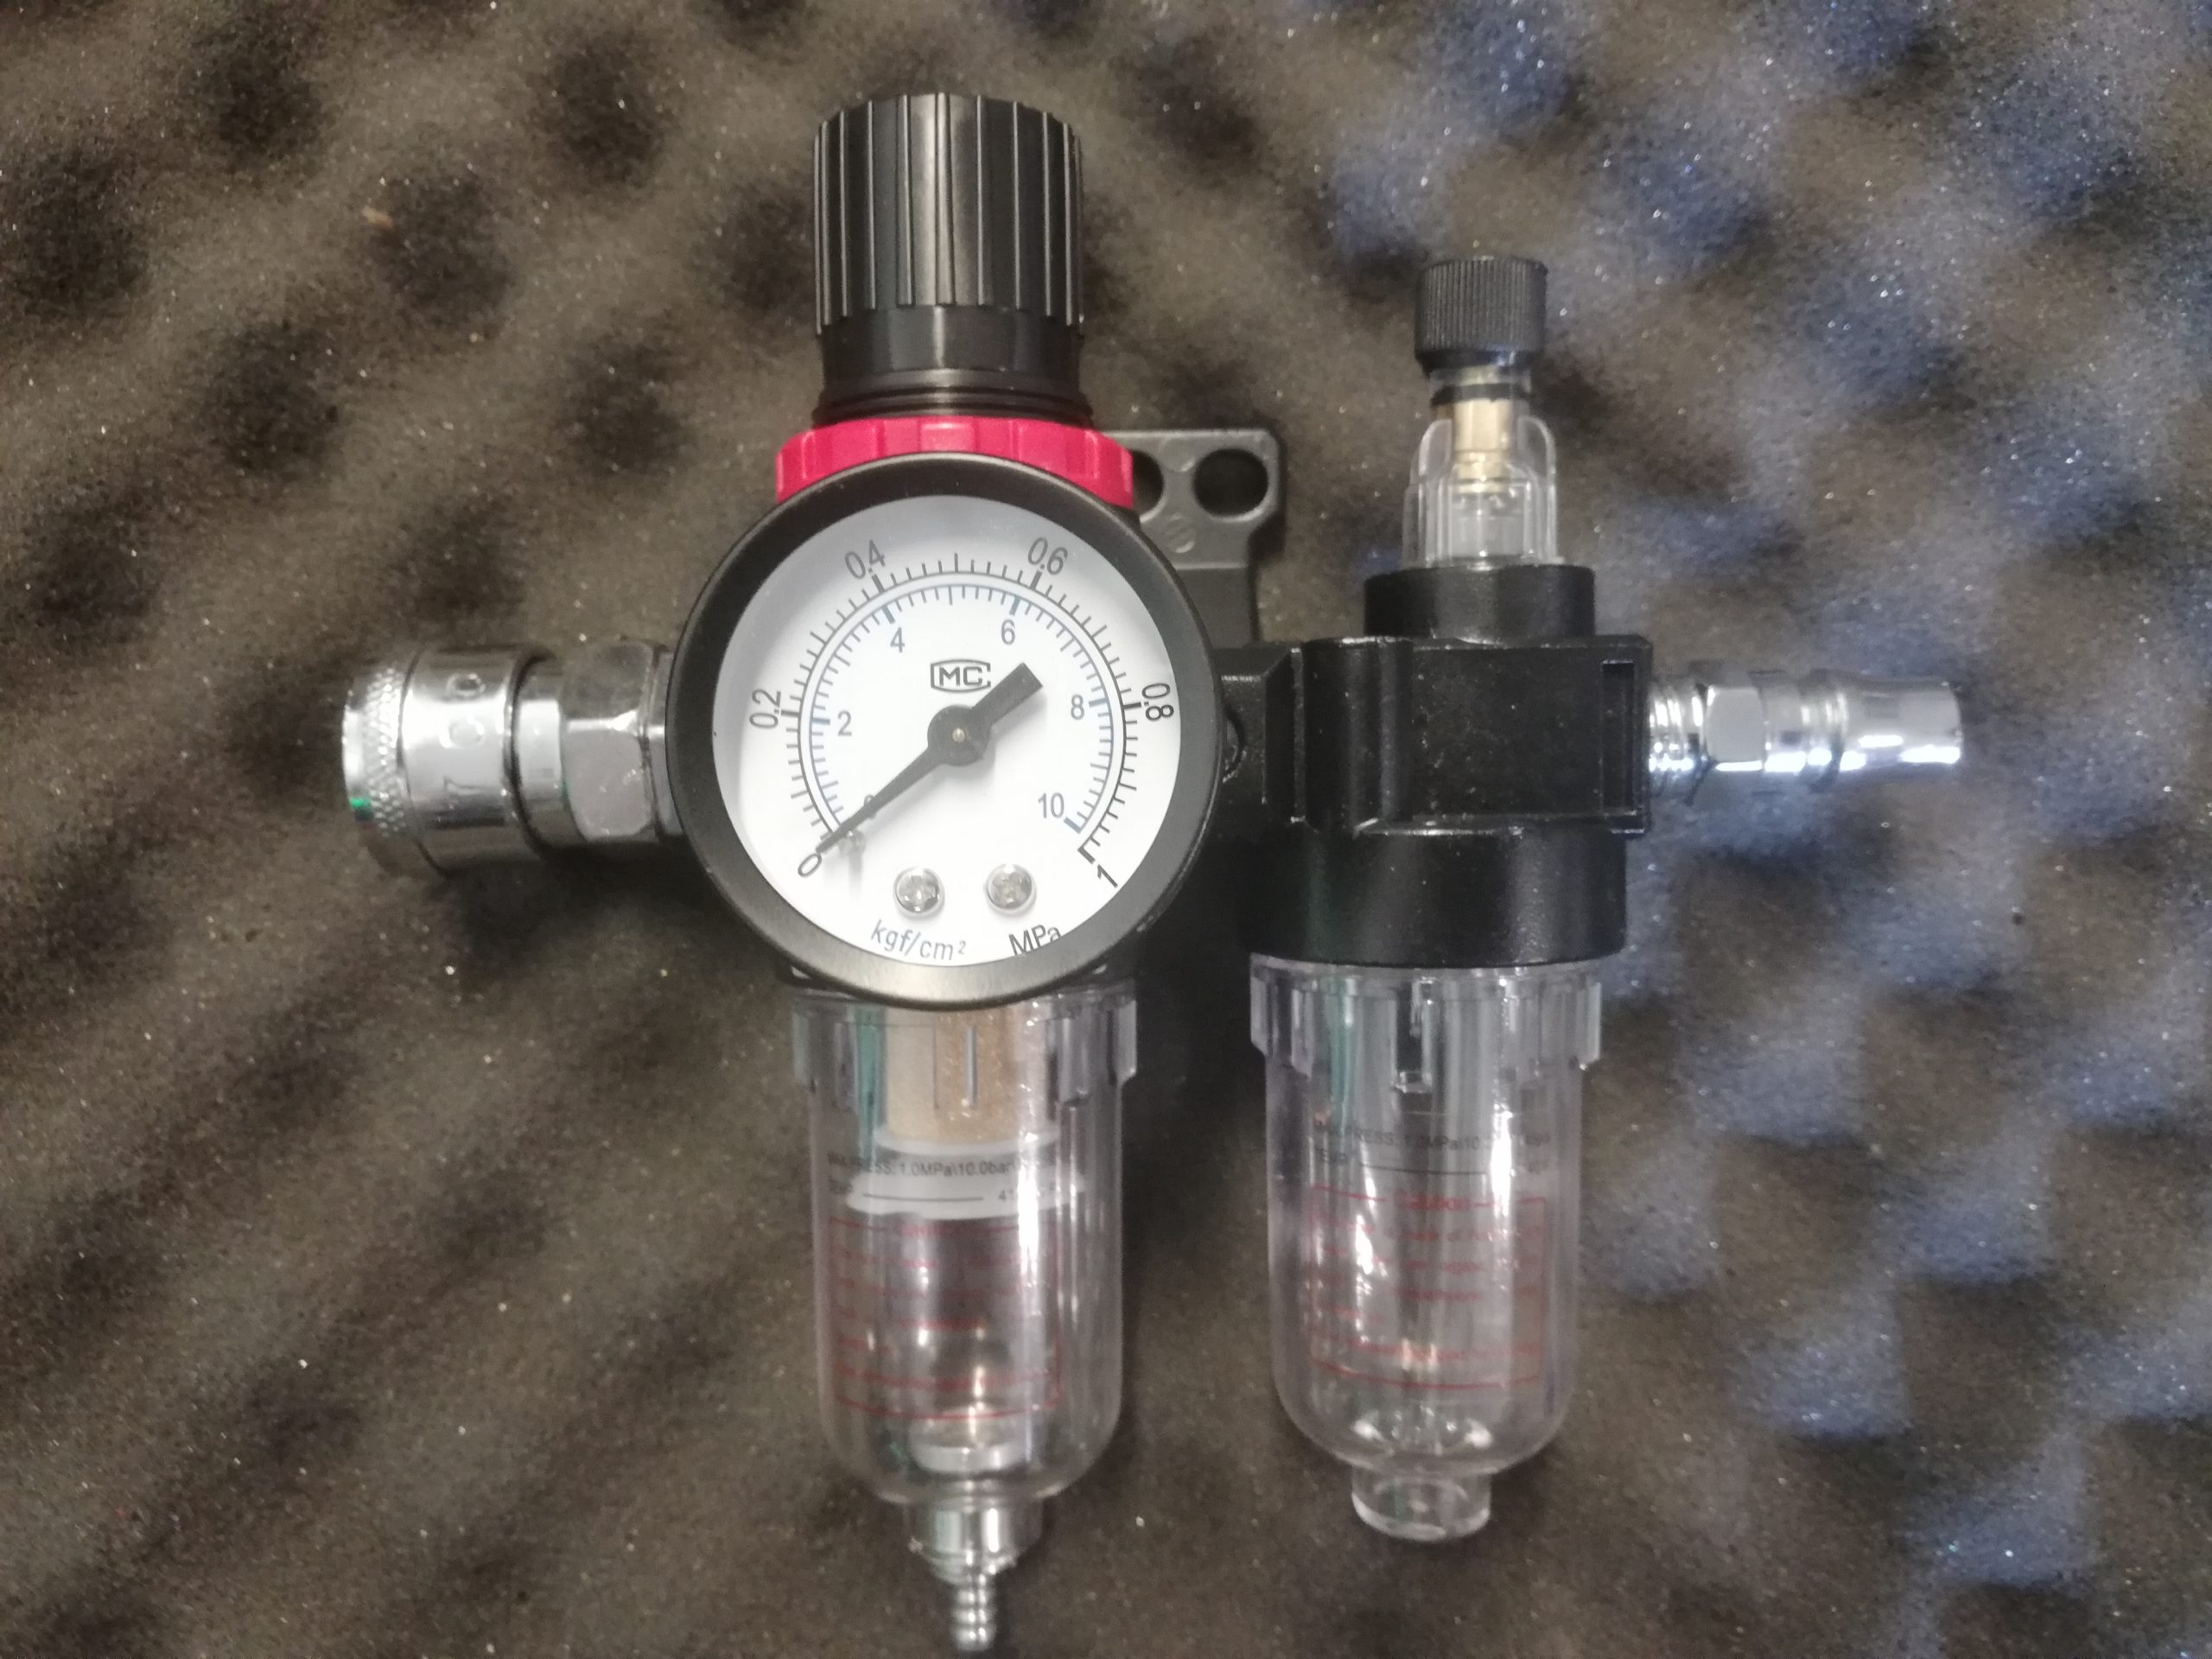 Pneumatischer Wasserabscheider Druckregler Pneumatische mit Manometer Ruolin Druckminderer Druckluft Wasserabscheider Druckluft 1/4 Filter Wasserabscheider Ölabscheider 